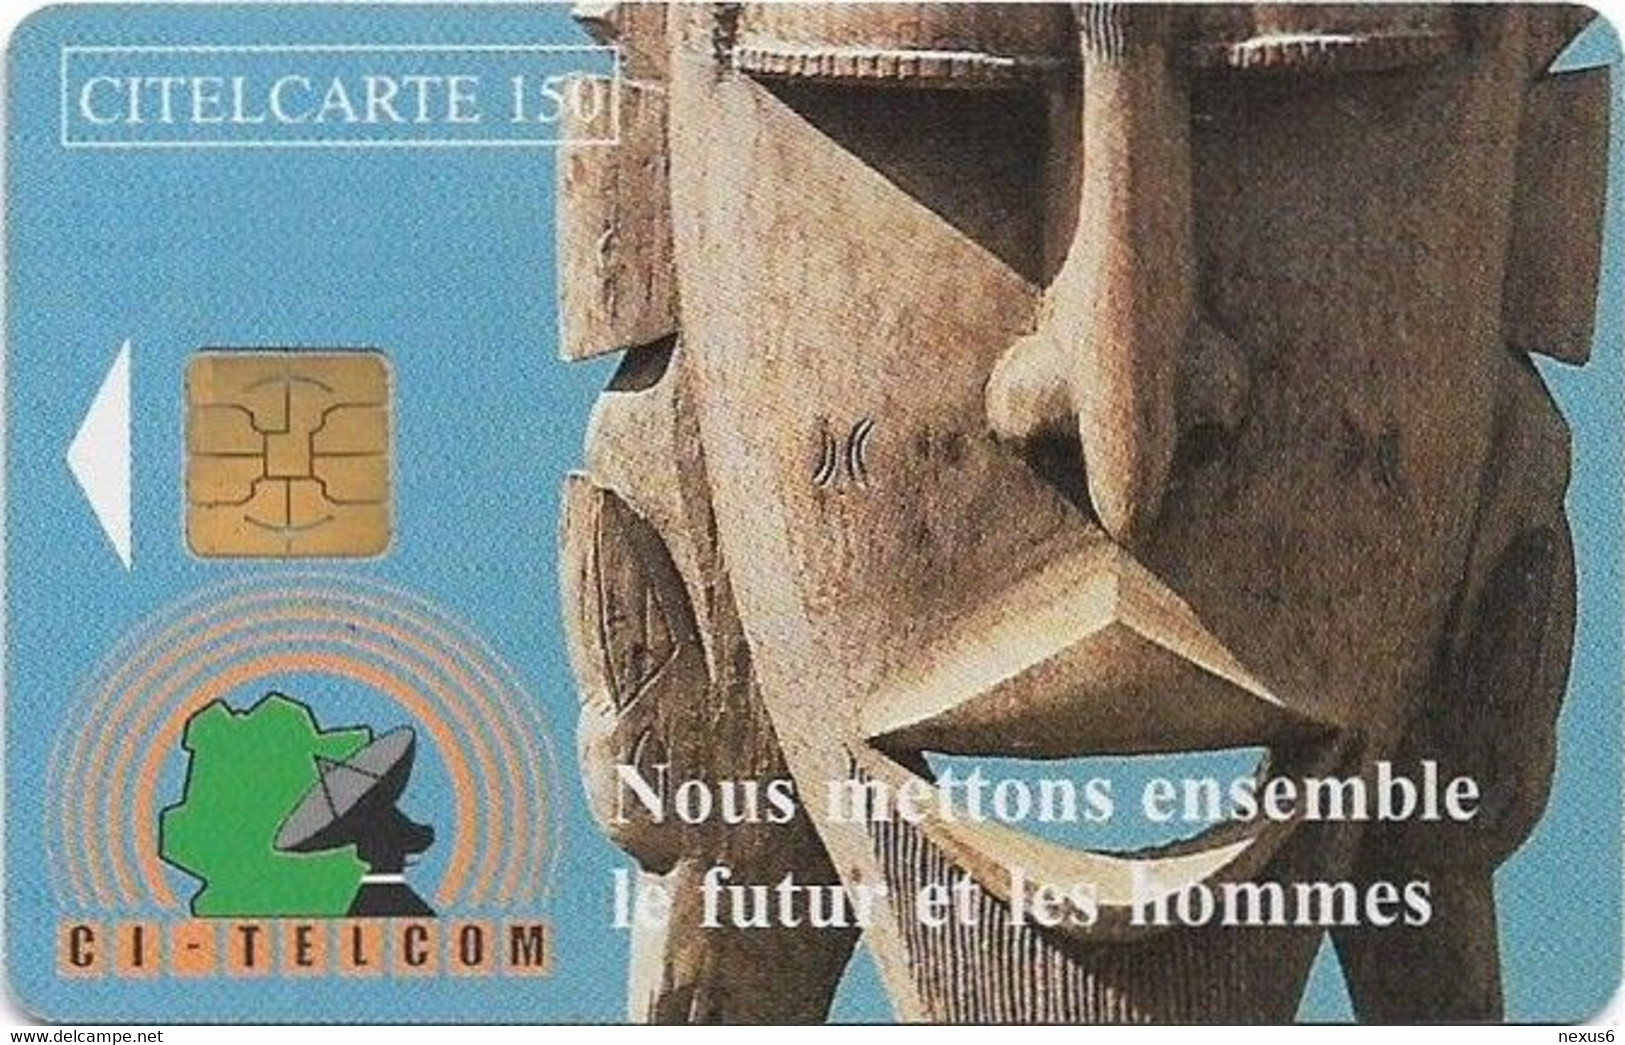 Ivory Coast - CI-Telcom - Carved Mask, Chip Philips, 150Units, 25.500ex, Used - Ivory Coast